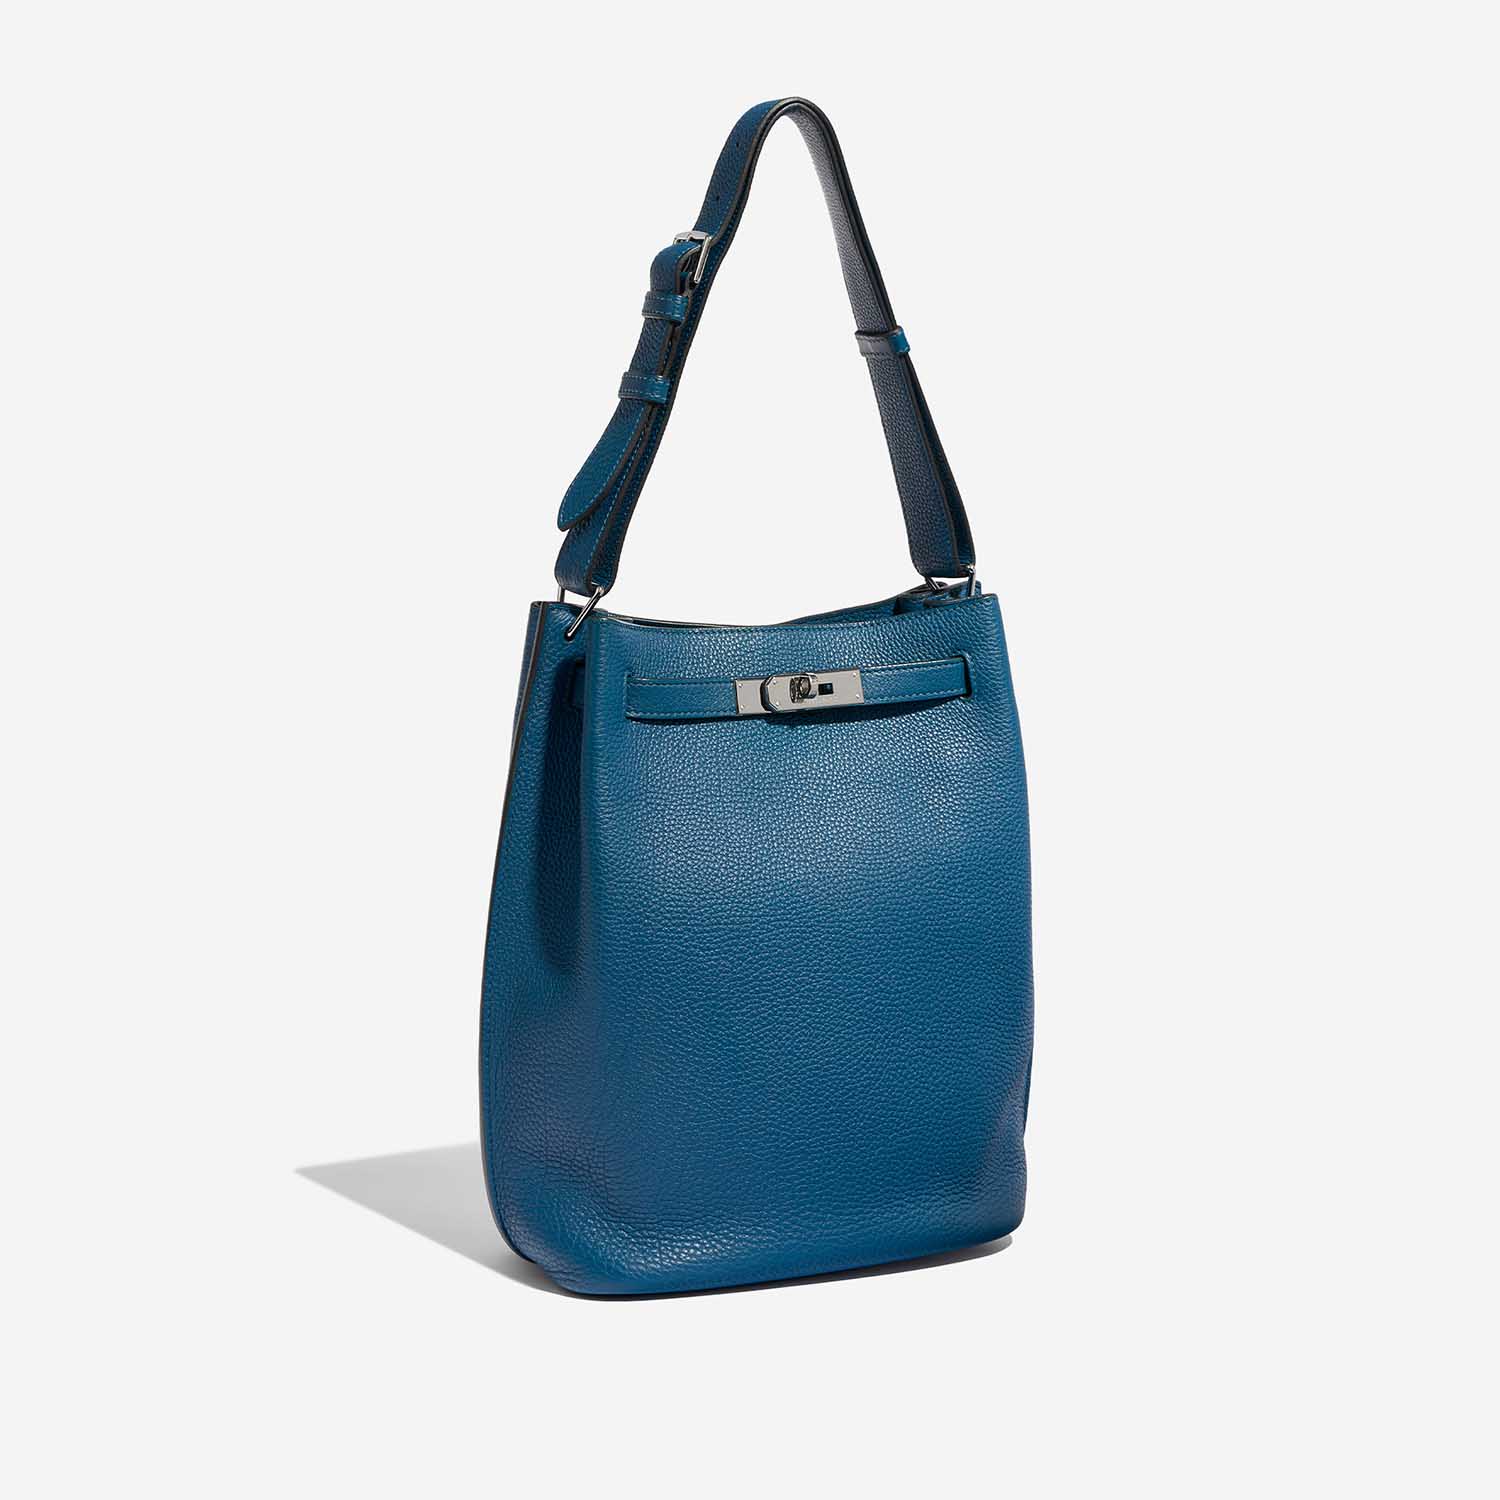 Pre-owned Hermès Tasche So Kelly 26 Togo Cobalt Blue Side Front | Verkaufen Sie Ihre Designer-Tasche auf Saclab.com